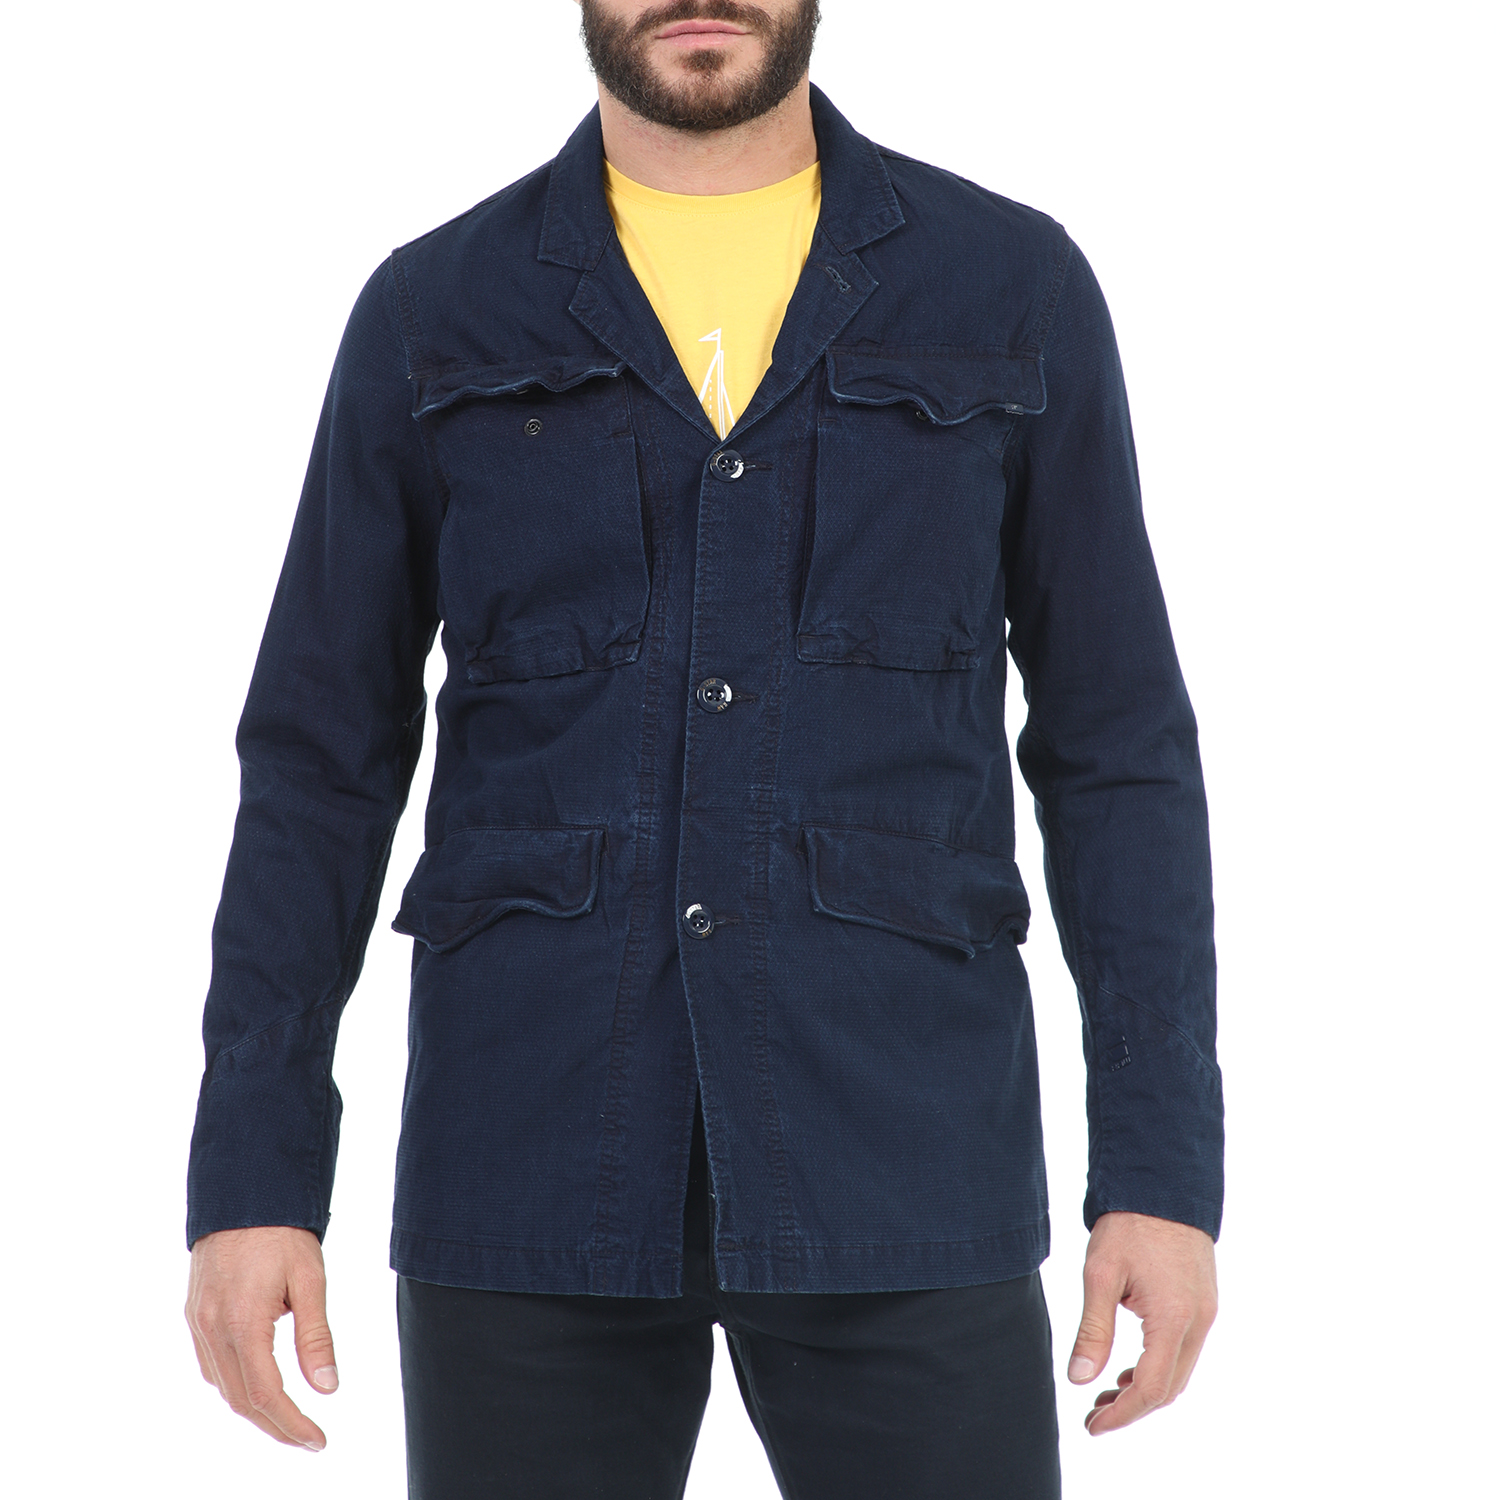 Ανδρικά/Ρούχα/Πανωφόρια/Τζάκετς G-STAR RAW - Ανδρικό jacket G-STAR RAW Vodan Worker Overshirt μπλε